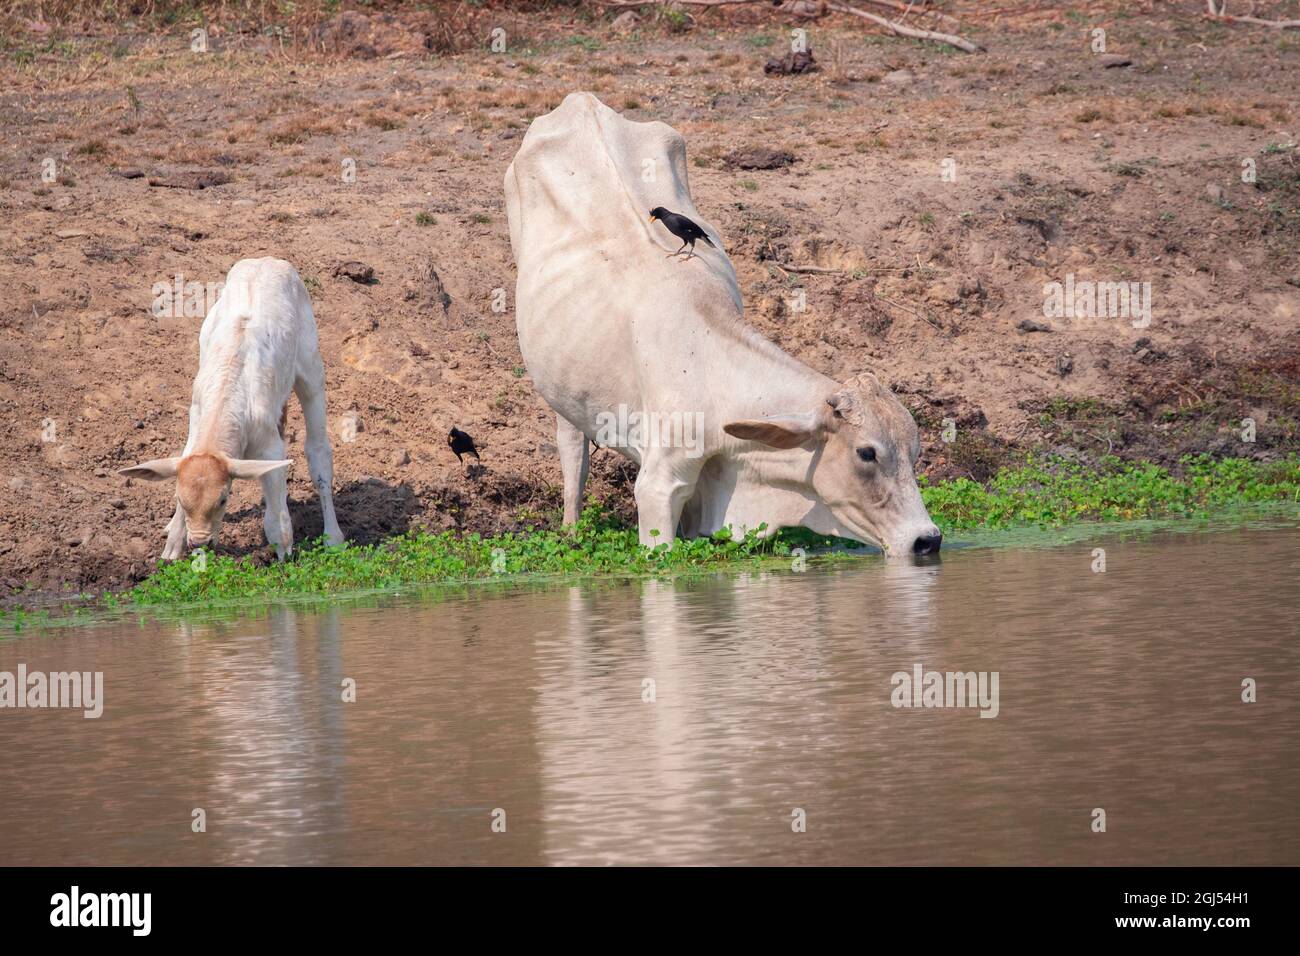 Image des vaches qui boivent de l'eau dans le marais sur fond de nature. Animal de ferme. Banque D'Images